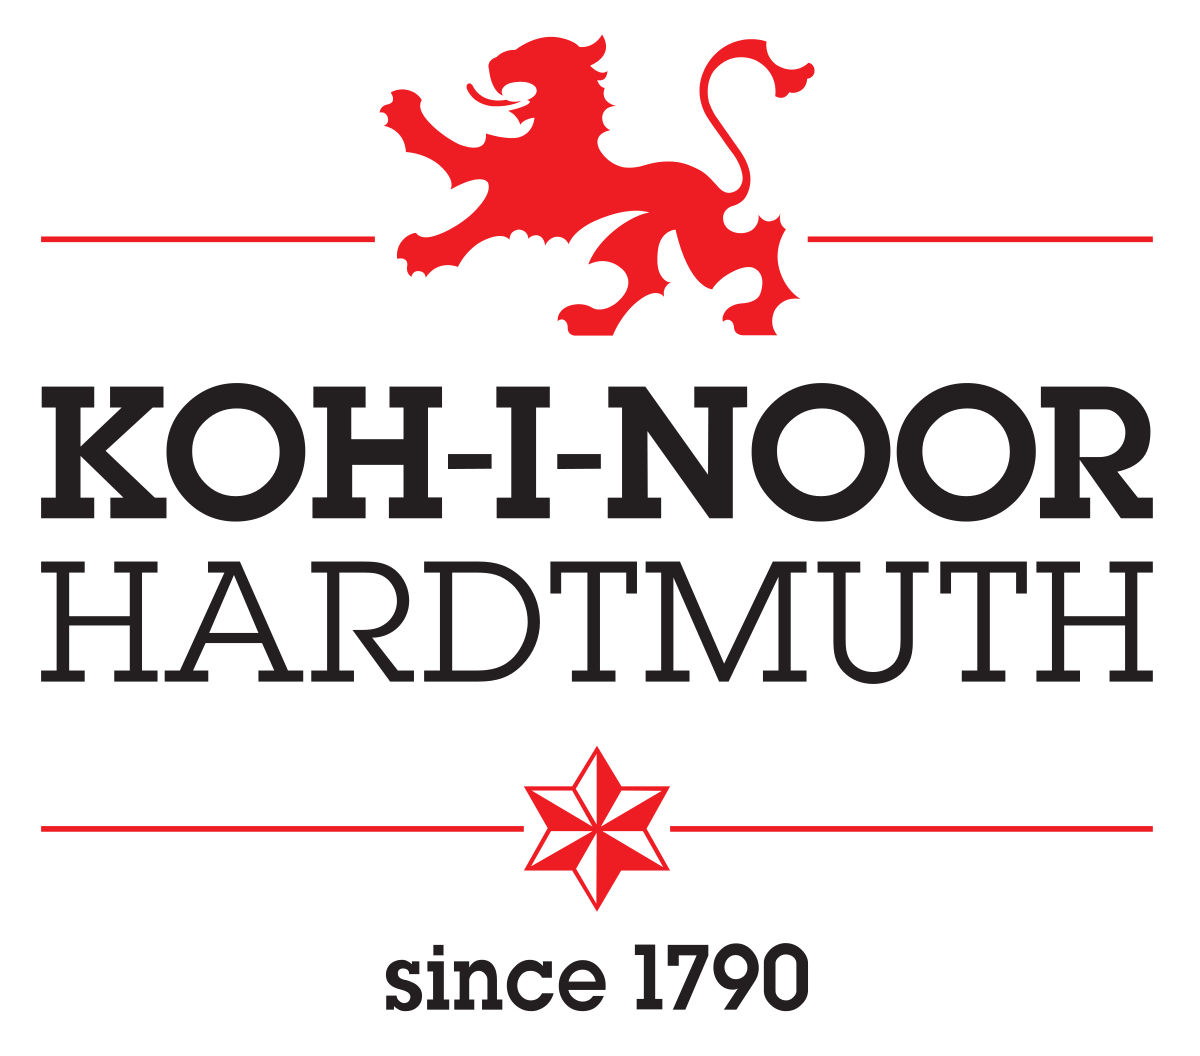 Koh-I-Noor logo